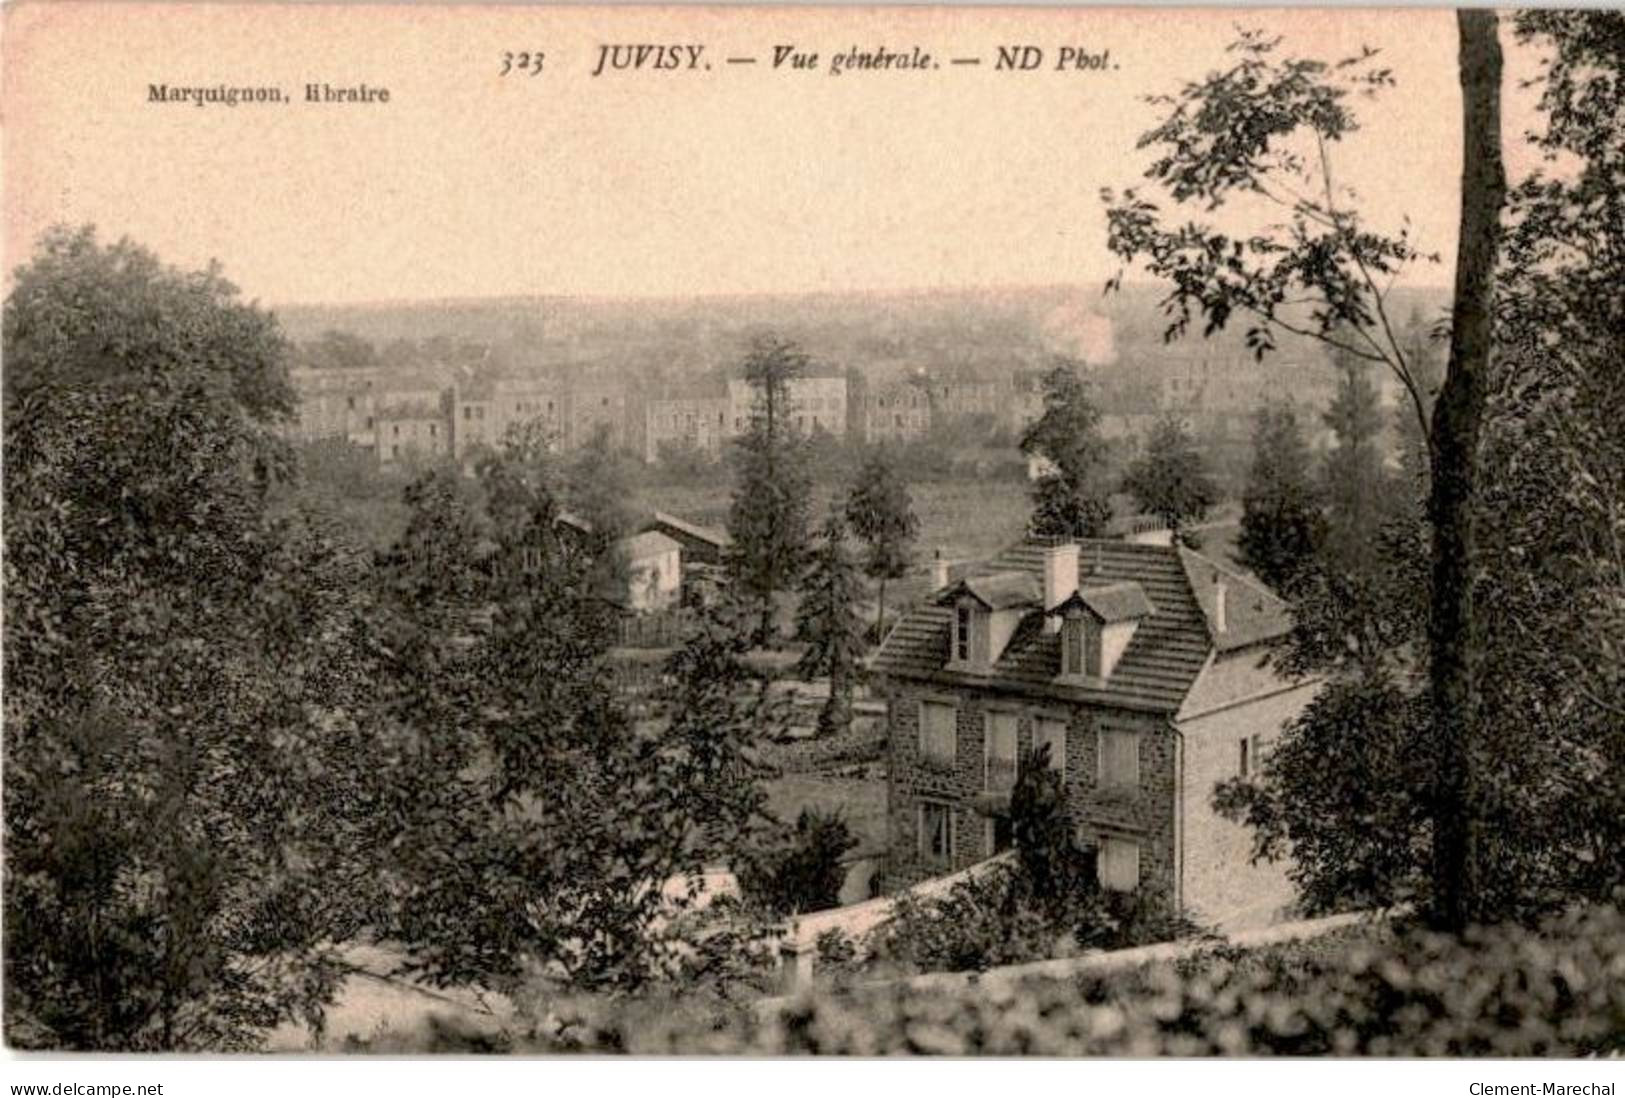 JUVISY-sur-ORGE: Vue Générale - Bon état - Juvisy-sur-Orge